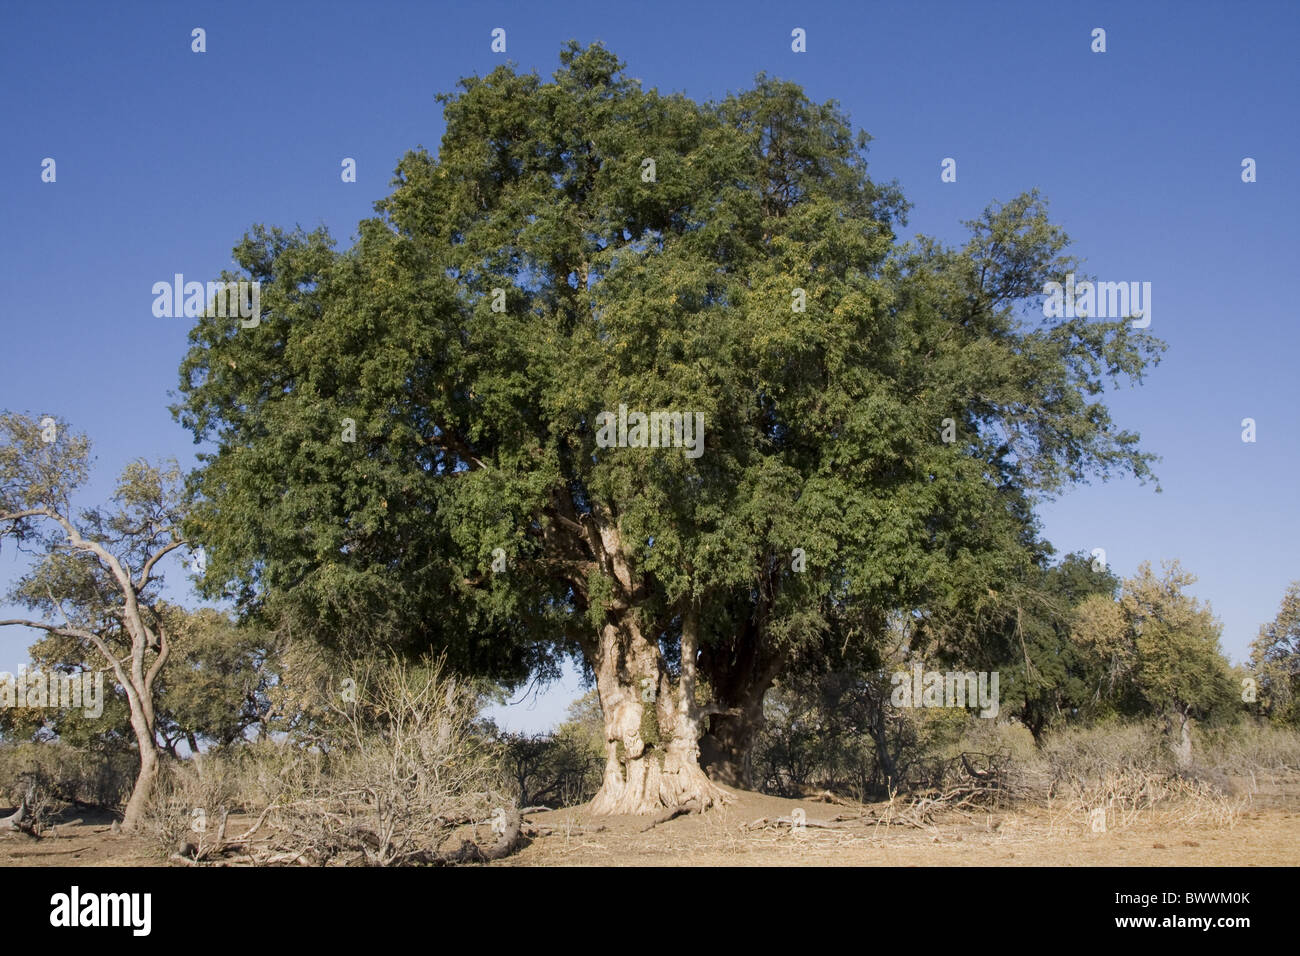 Mashatu Tree often used by leopards rest Botswana Stock Photo